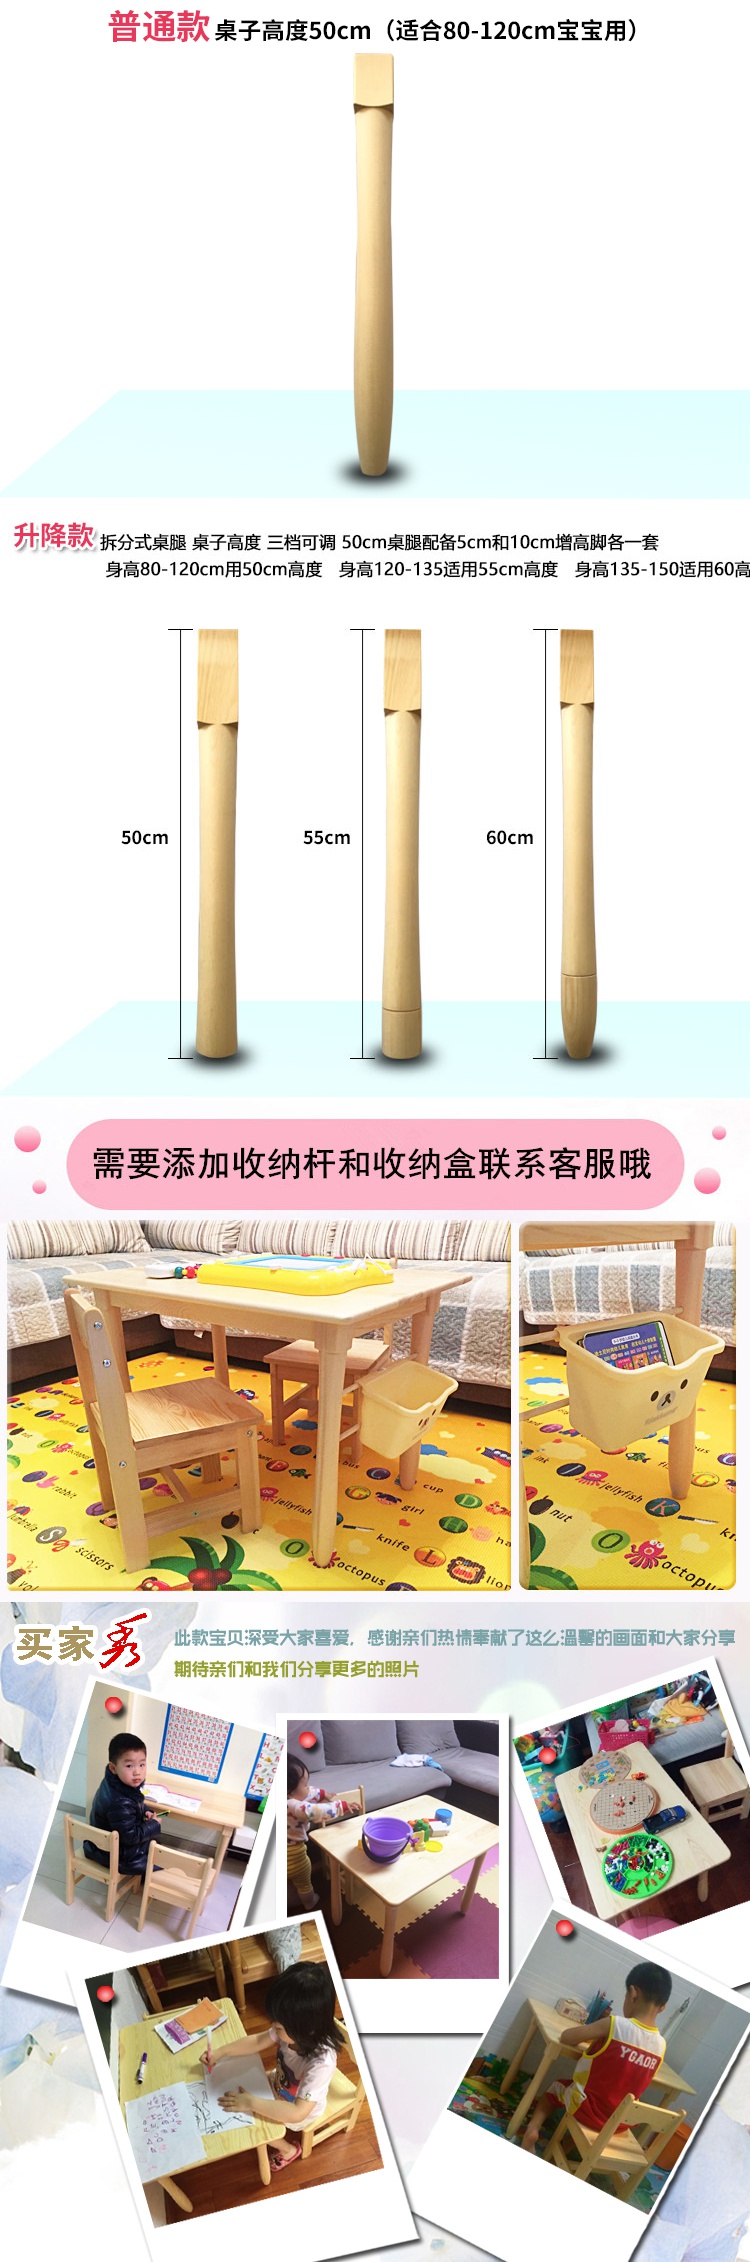 孩子身高-cm适用桌高60cm  桌子分普通款和升降款两种,普通款